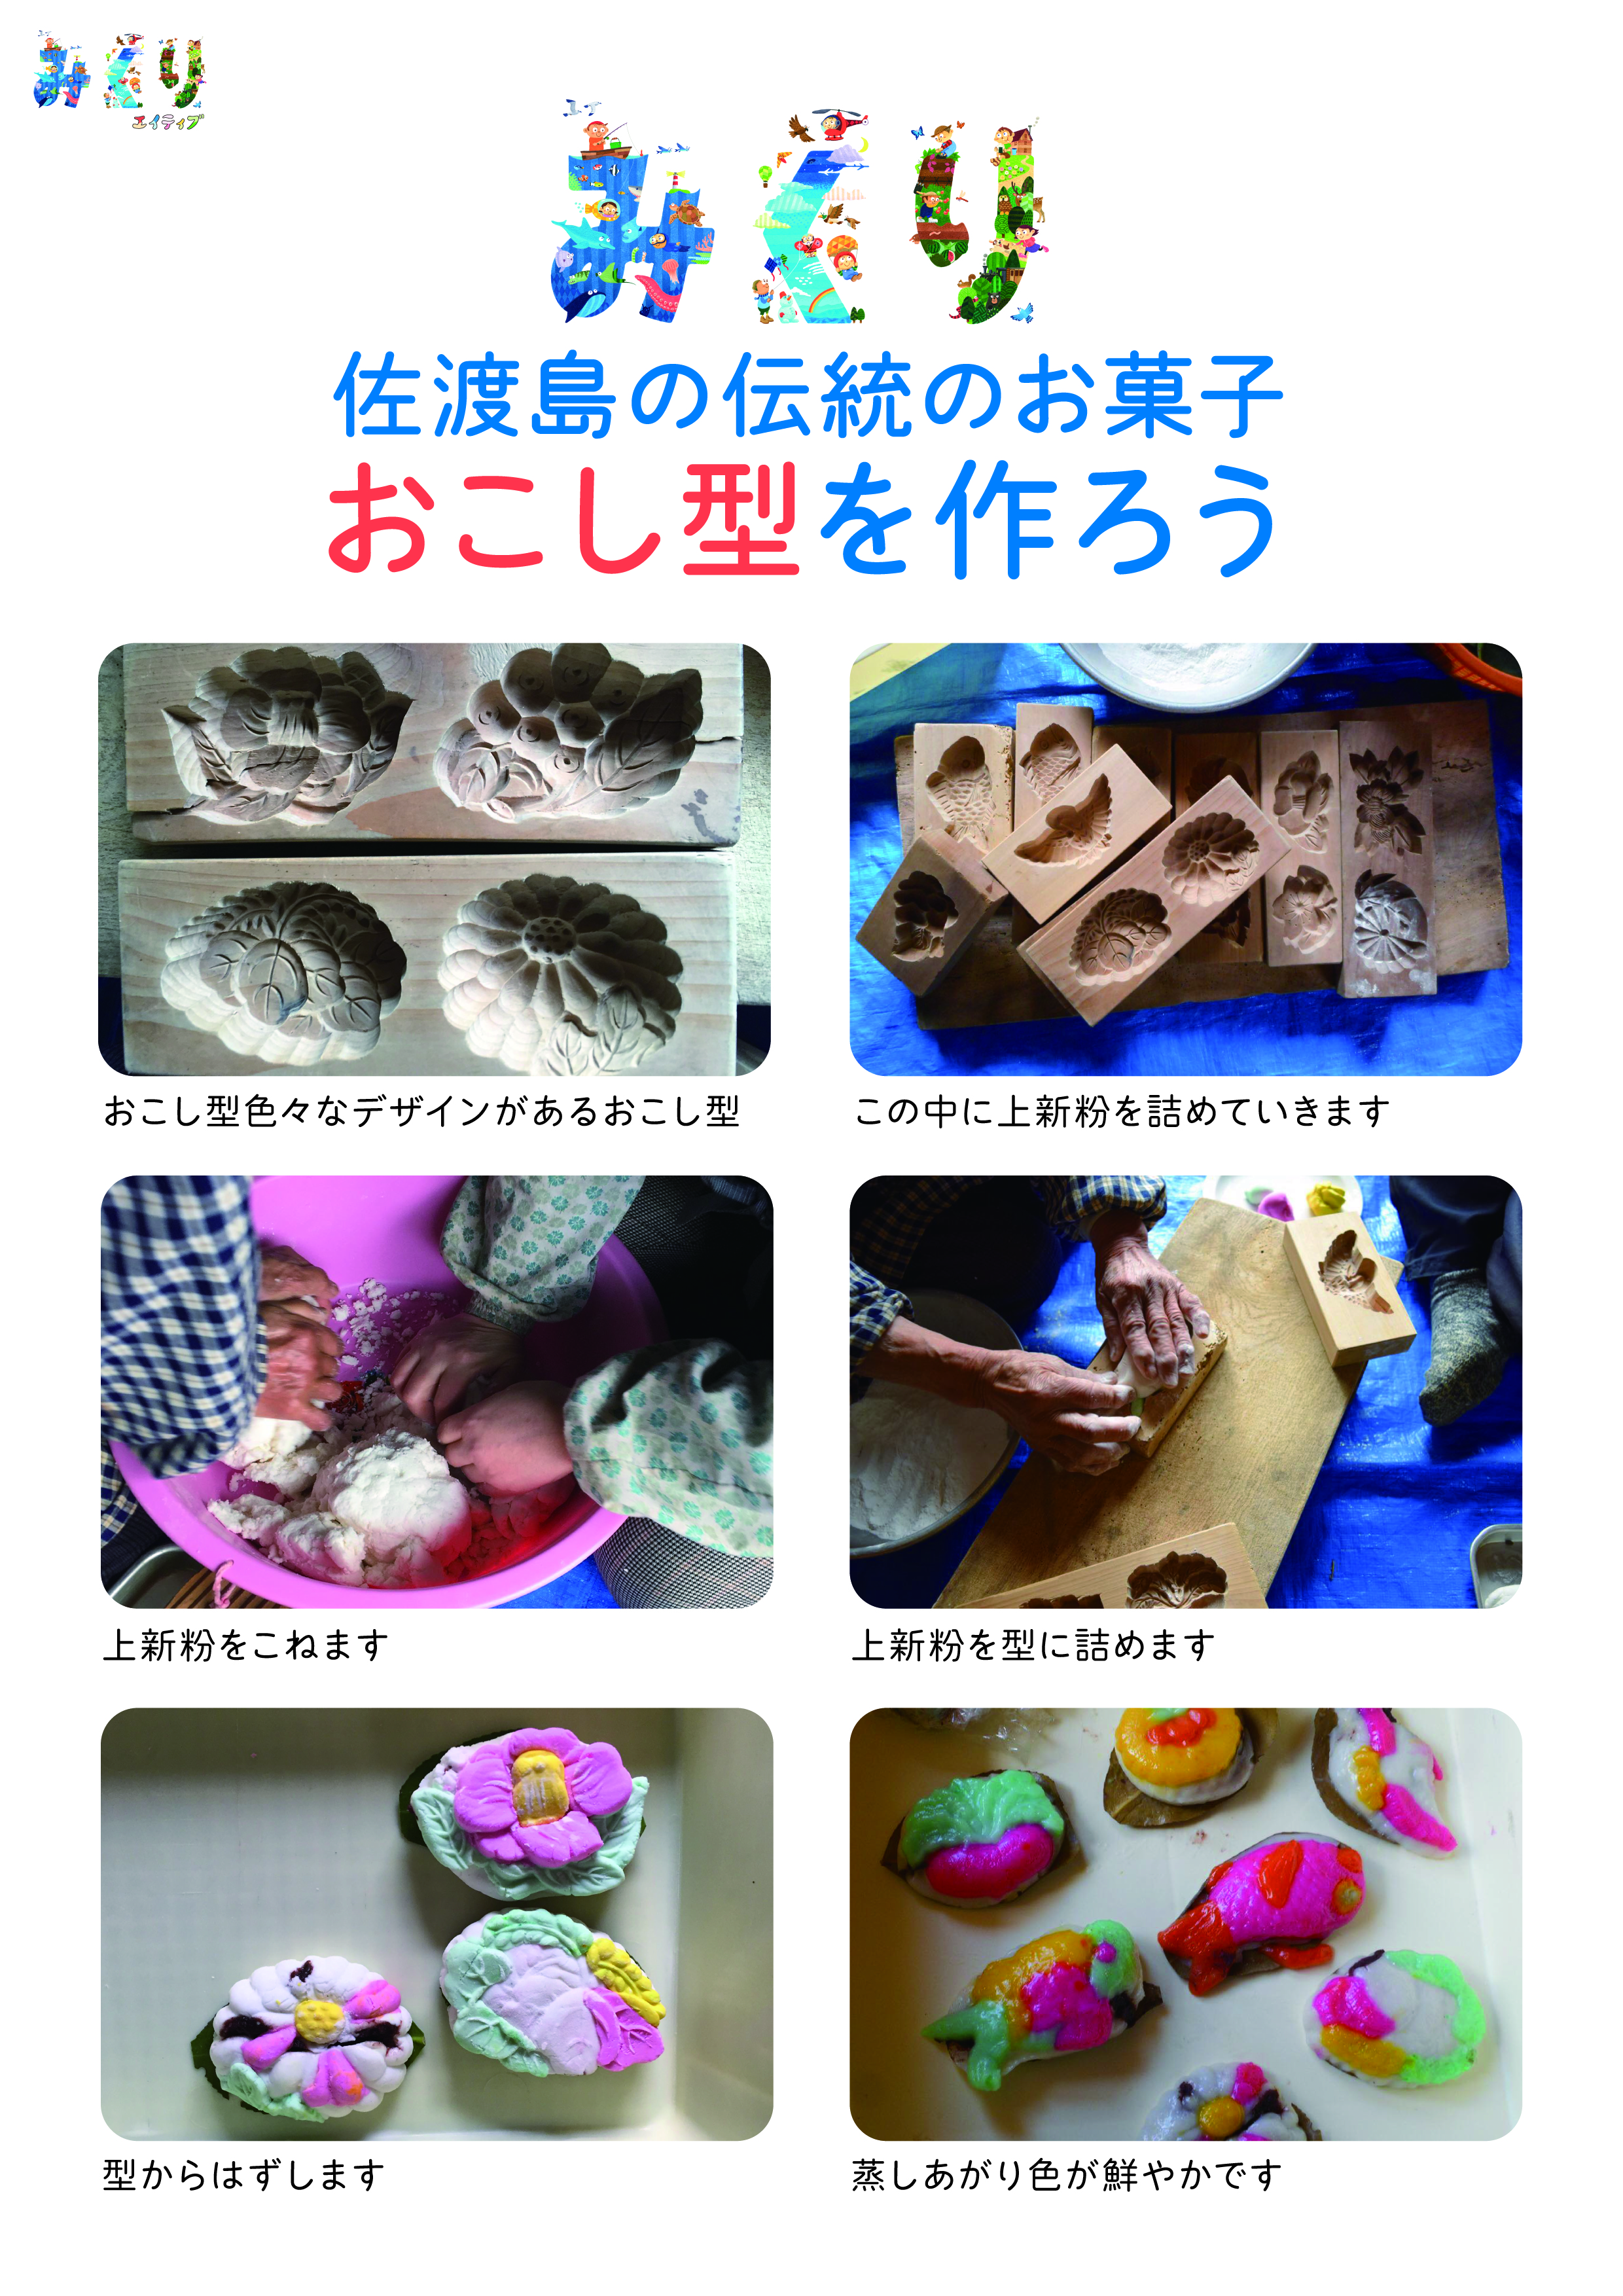 佐渡島の伝統お菓子おこし型を作ろう_チラシ2_0402olh